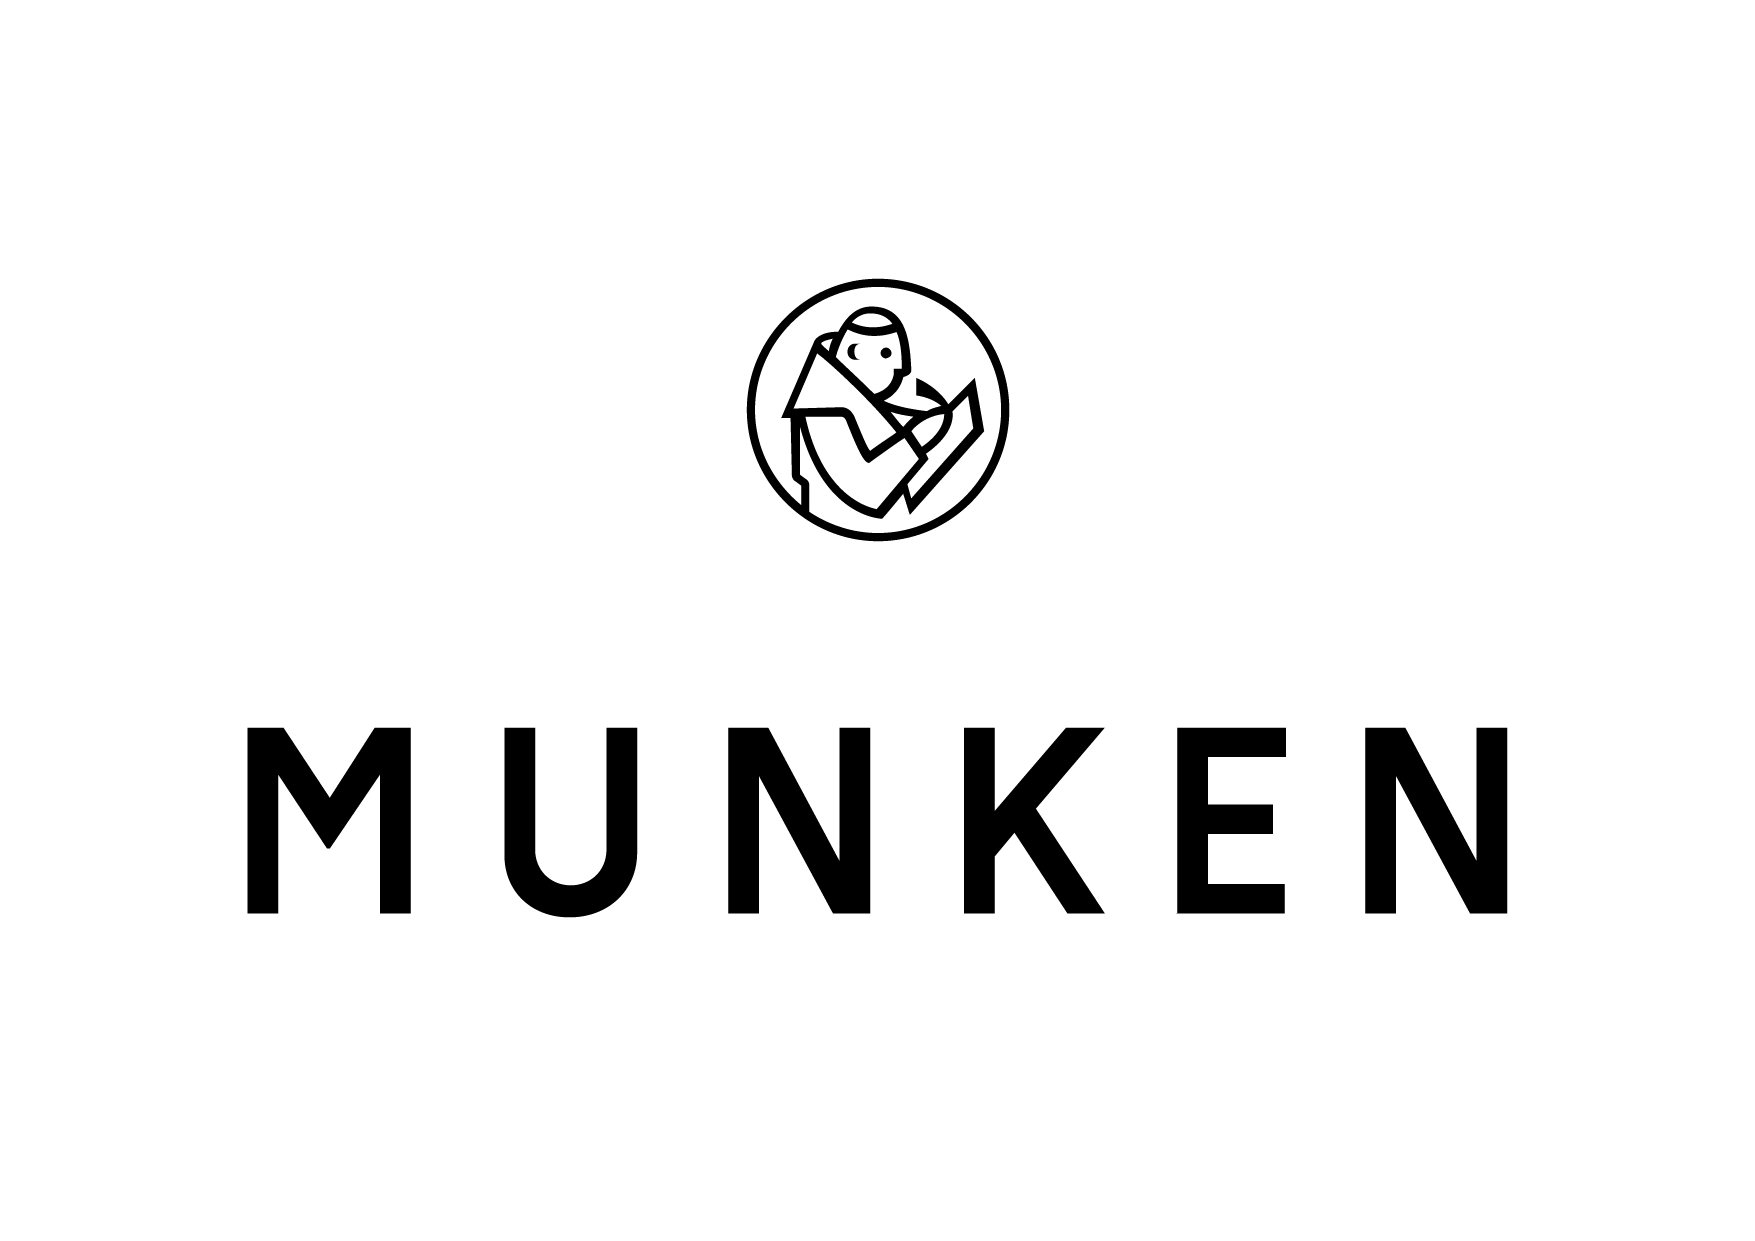 Munken logo_Rityta 1 kopia